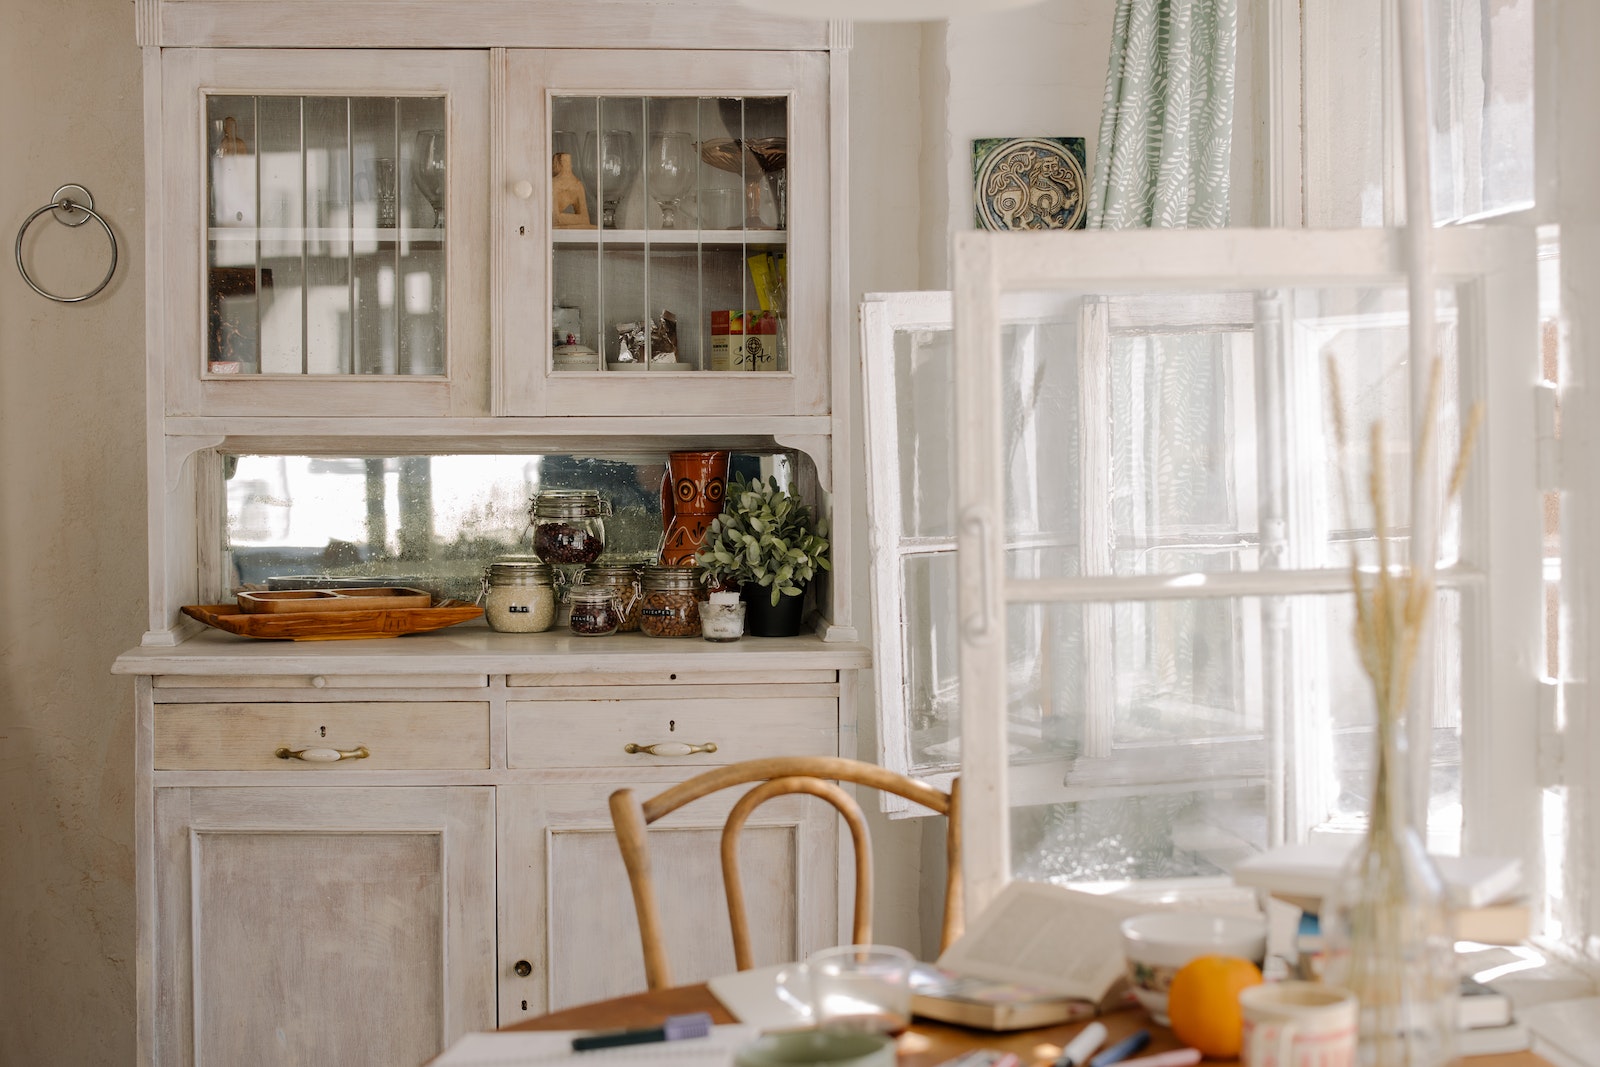 Wielofunkcyjne stoły w kuchni – jak wybrać idealny model?